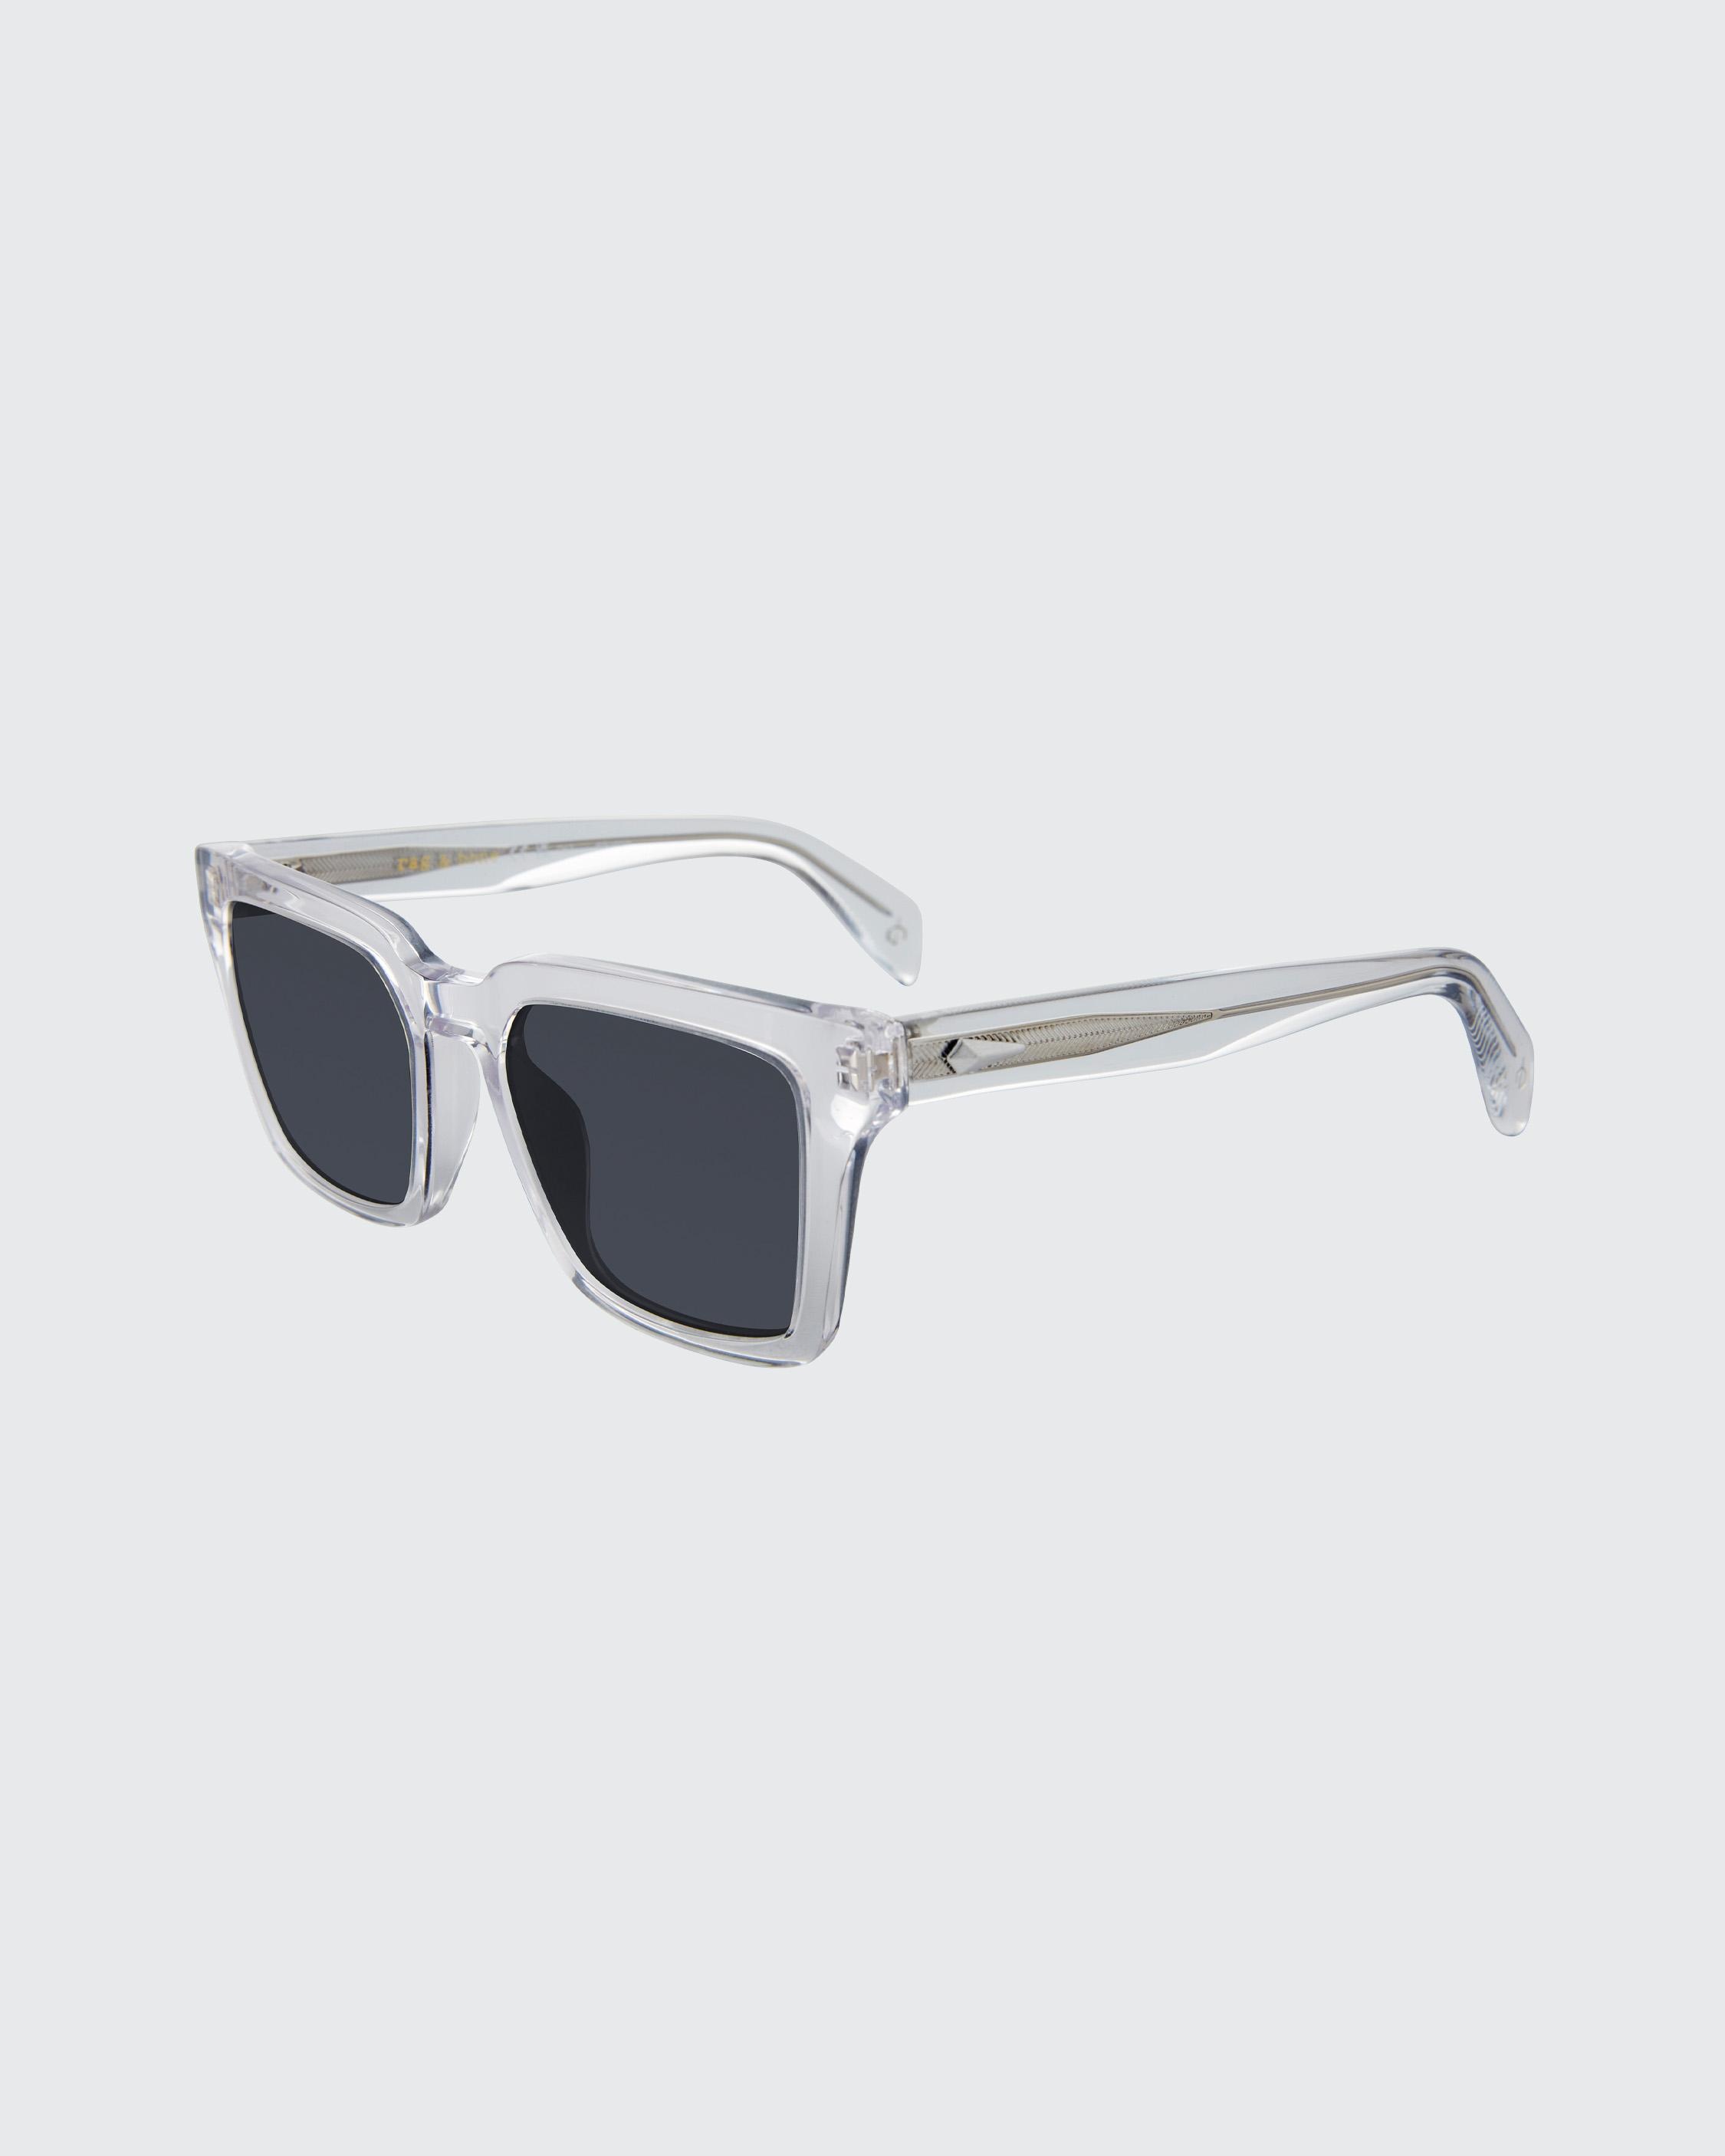 Zander
Square Sunglasses - 1